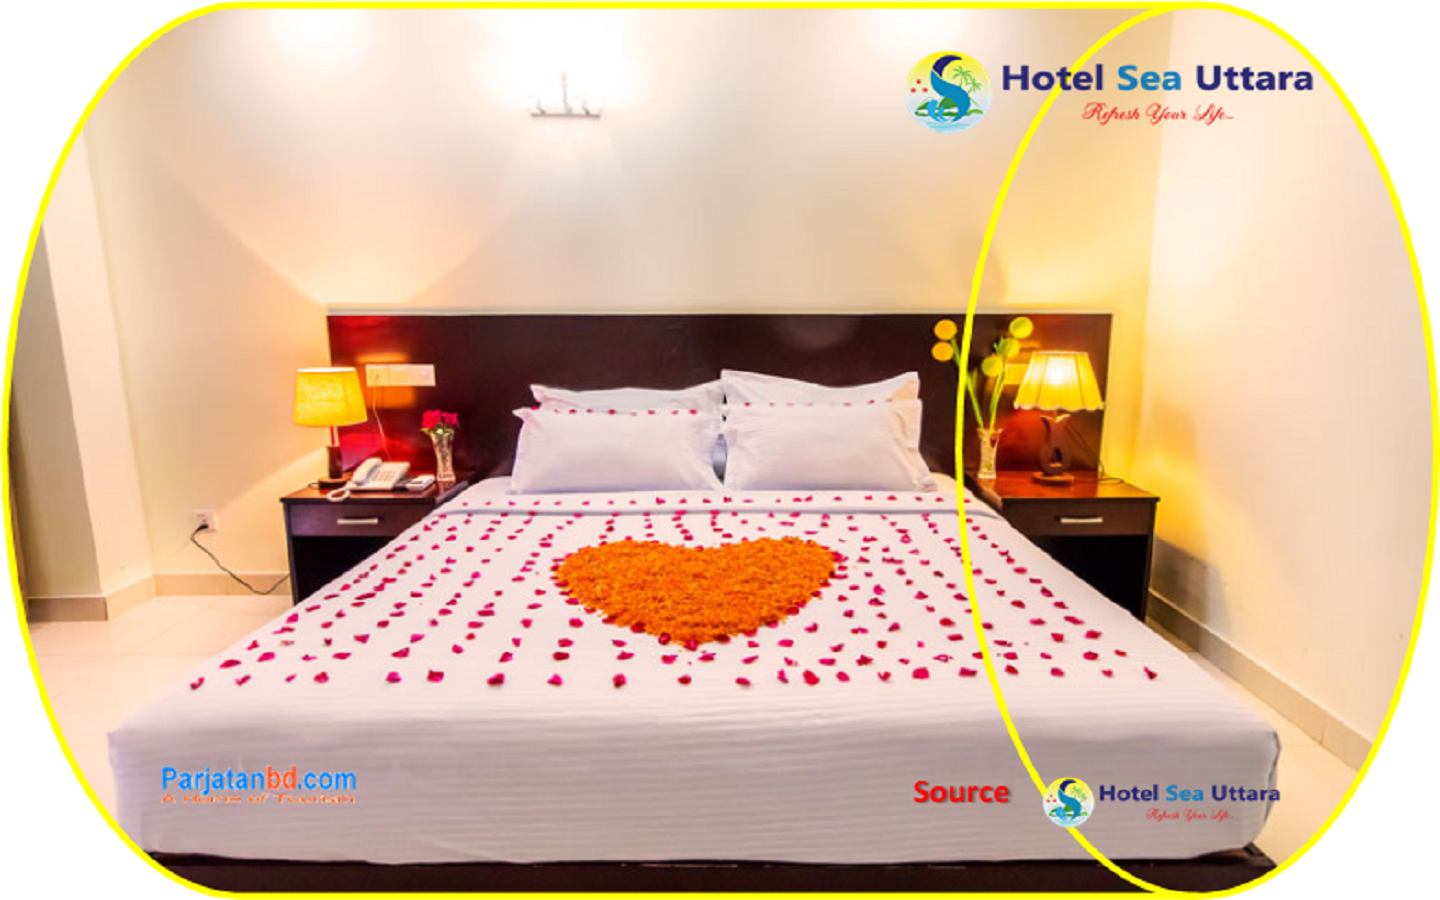 Room Honymoon Suite -1, Hotel Sea Uttara